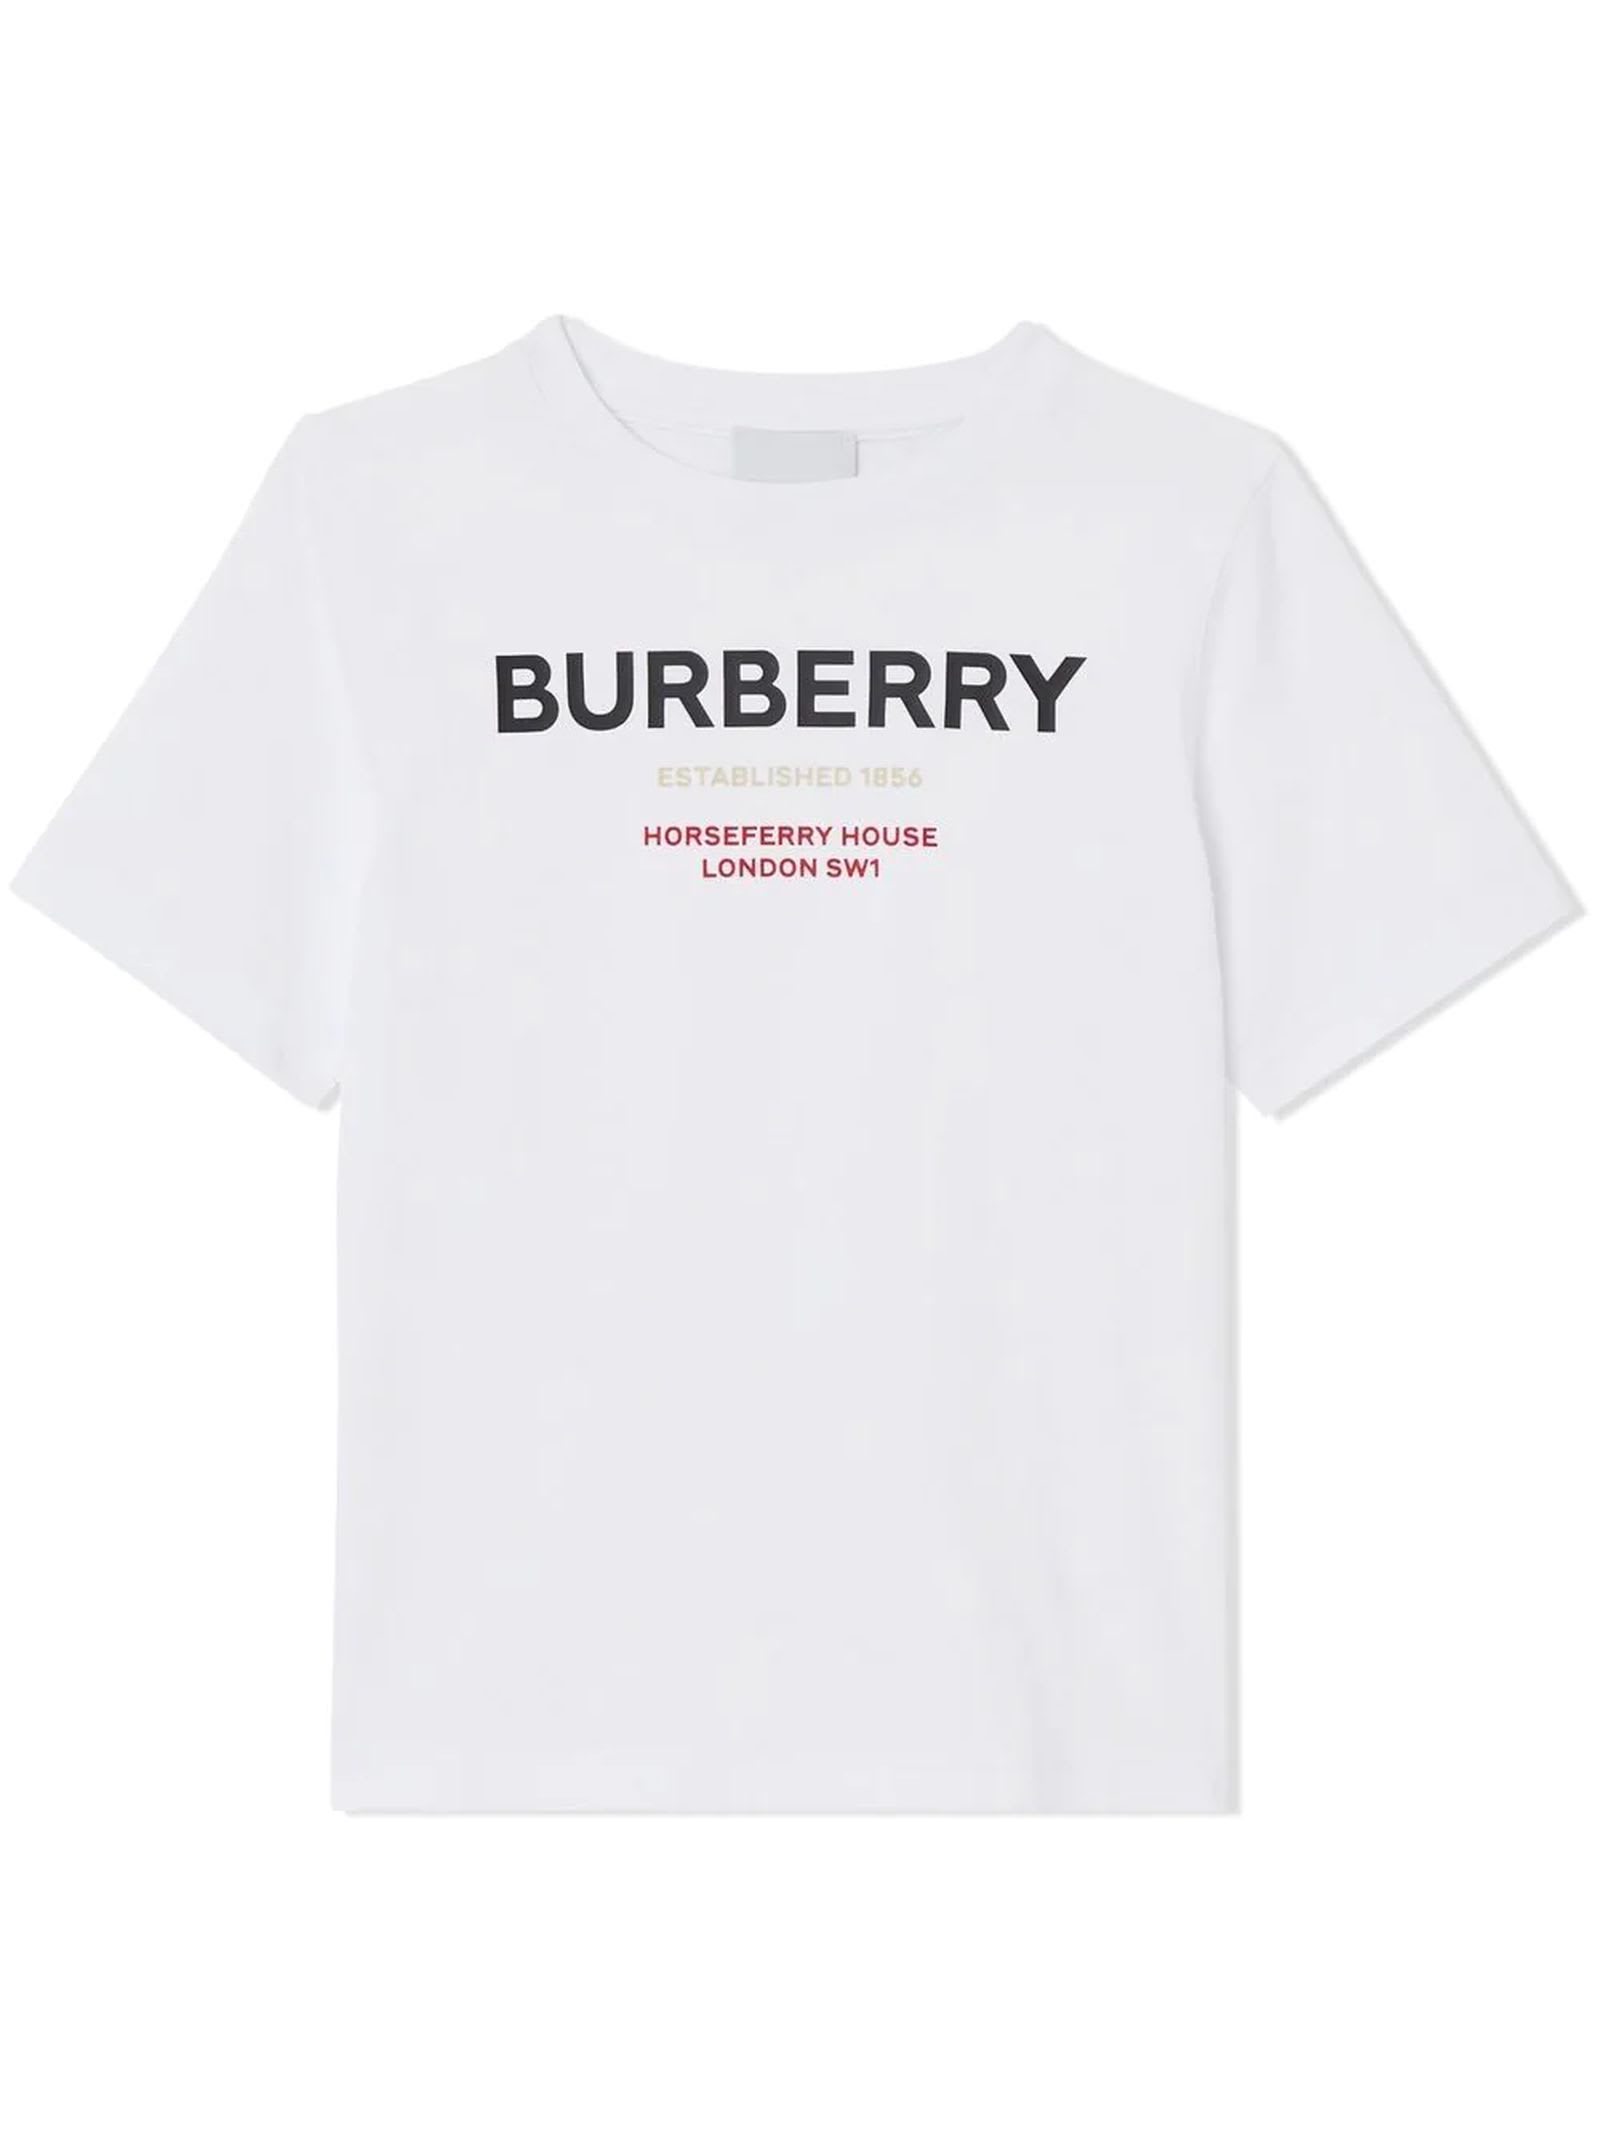 Burberry White Cotton Tshirt